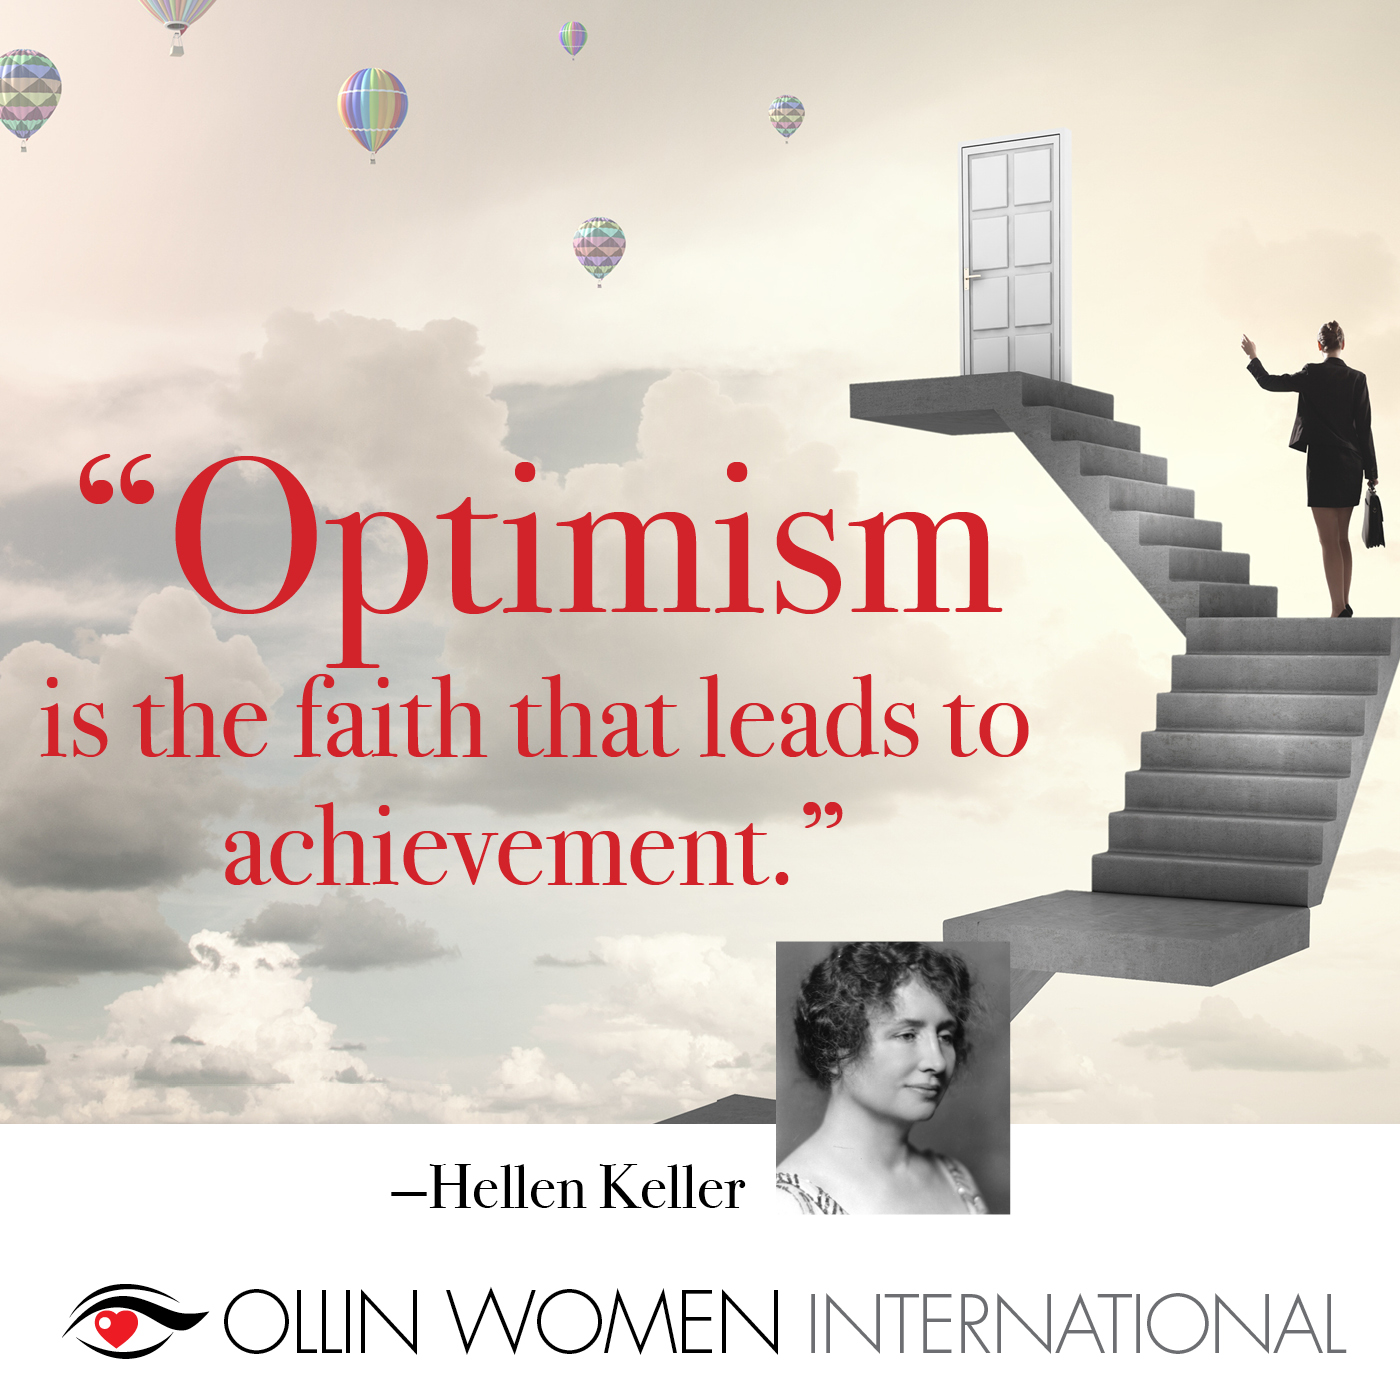 Hellen Keller - Optimism is the faith that leads to achievement.